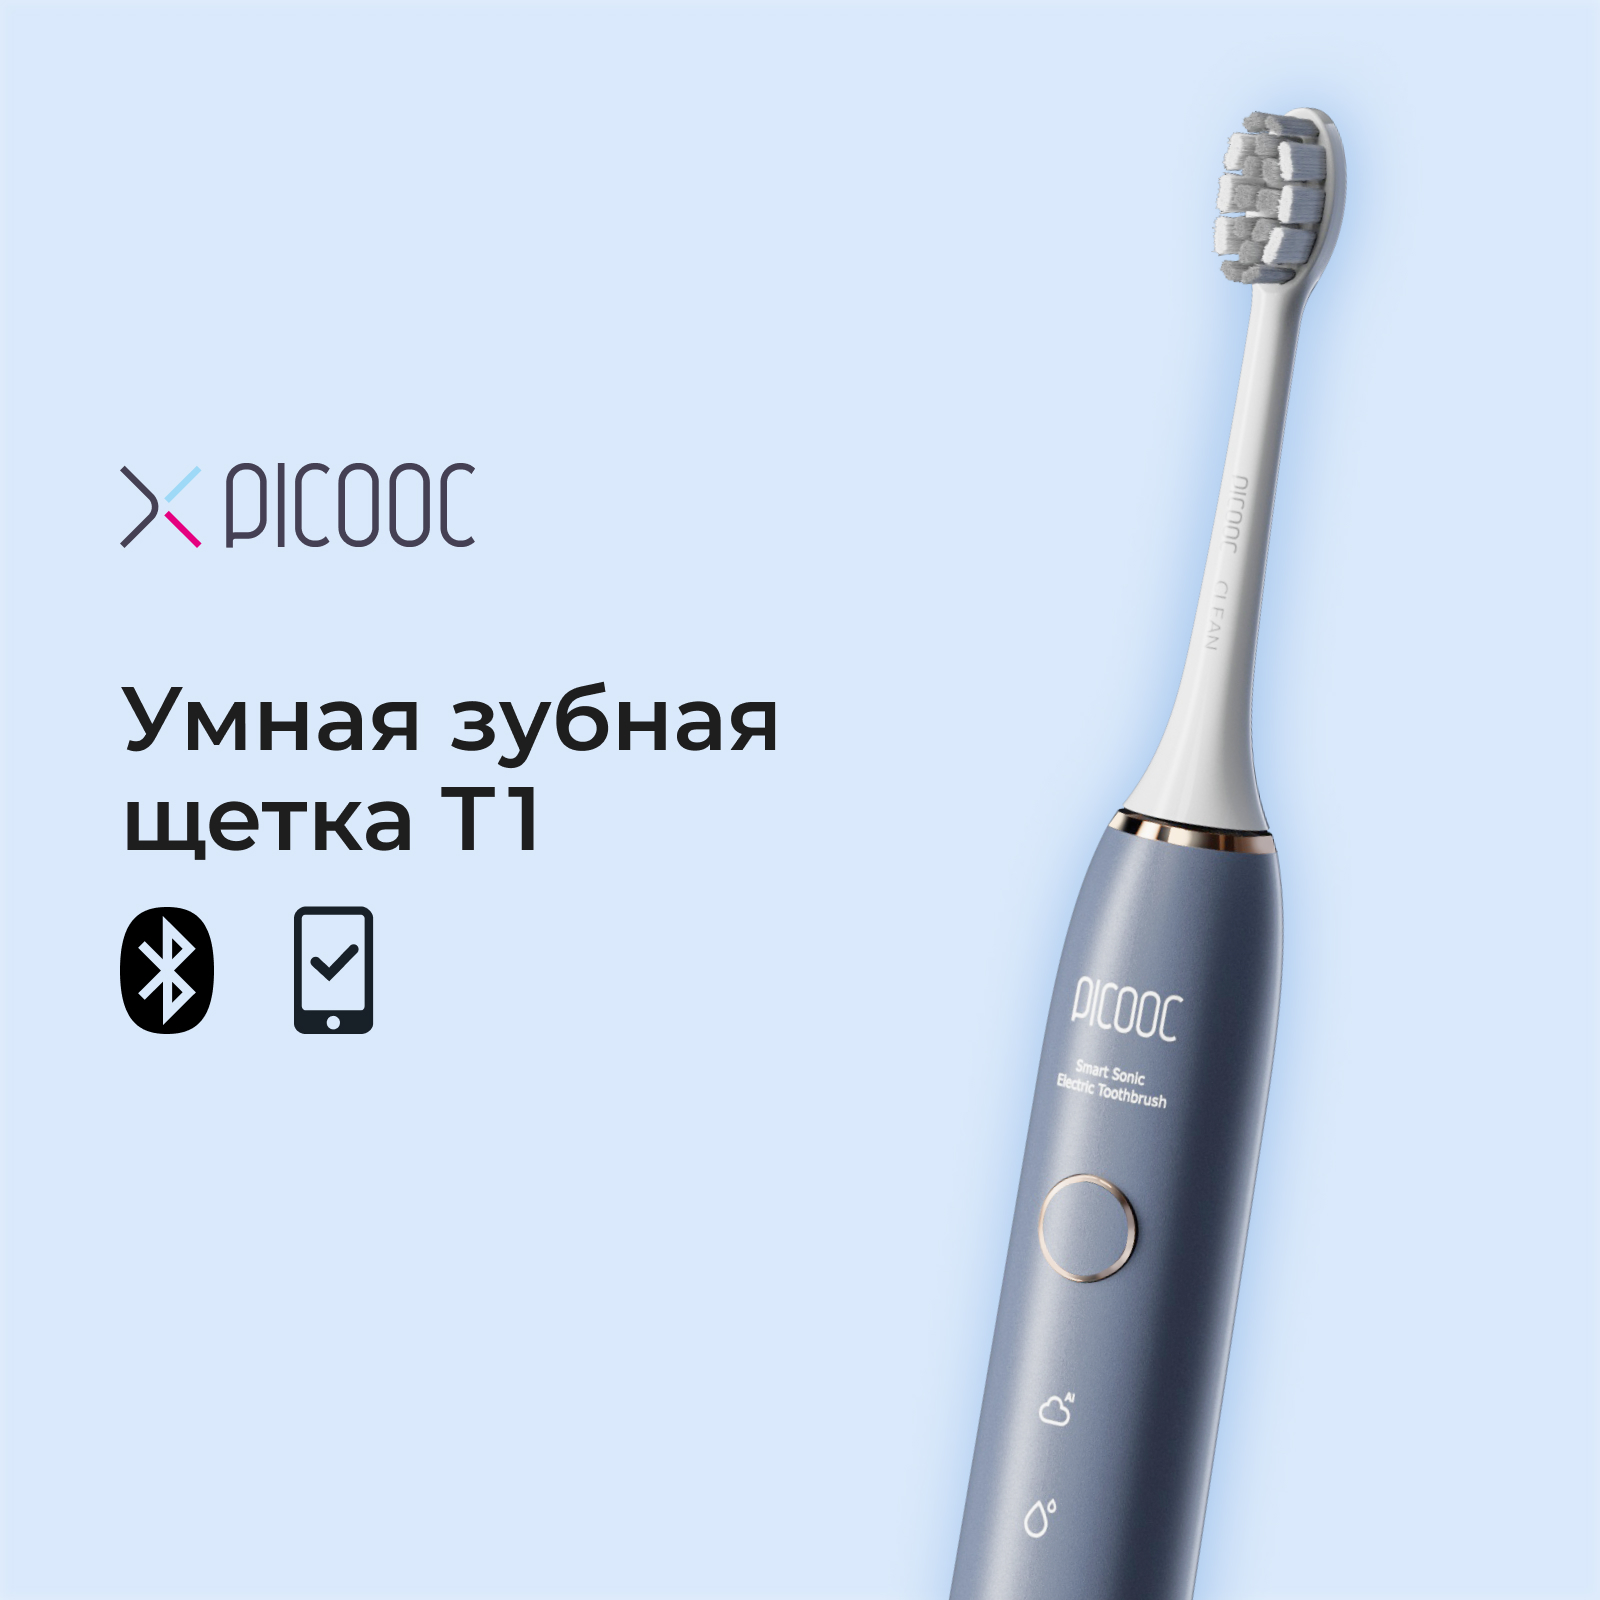 Электрическая зубная щетка Picooc T1 синяя электрическая зубная щетка picooc t1 белая